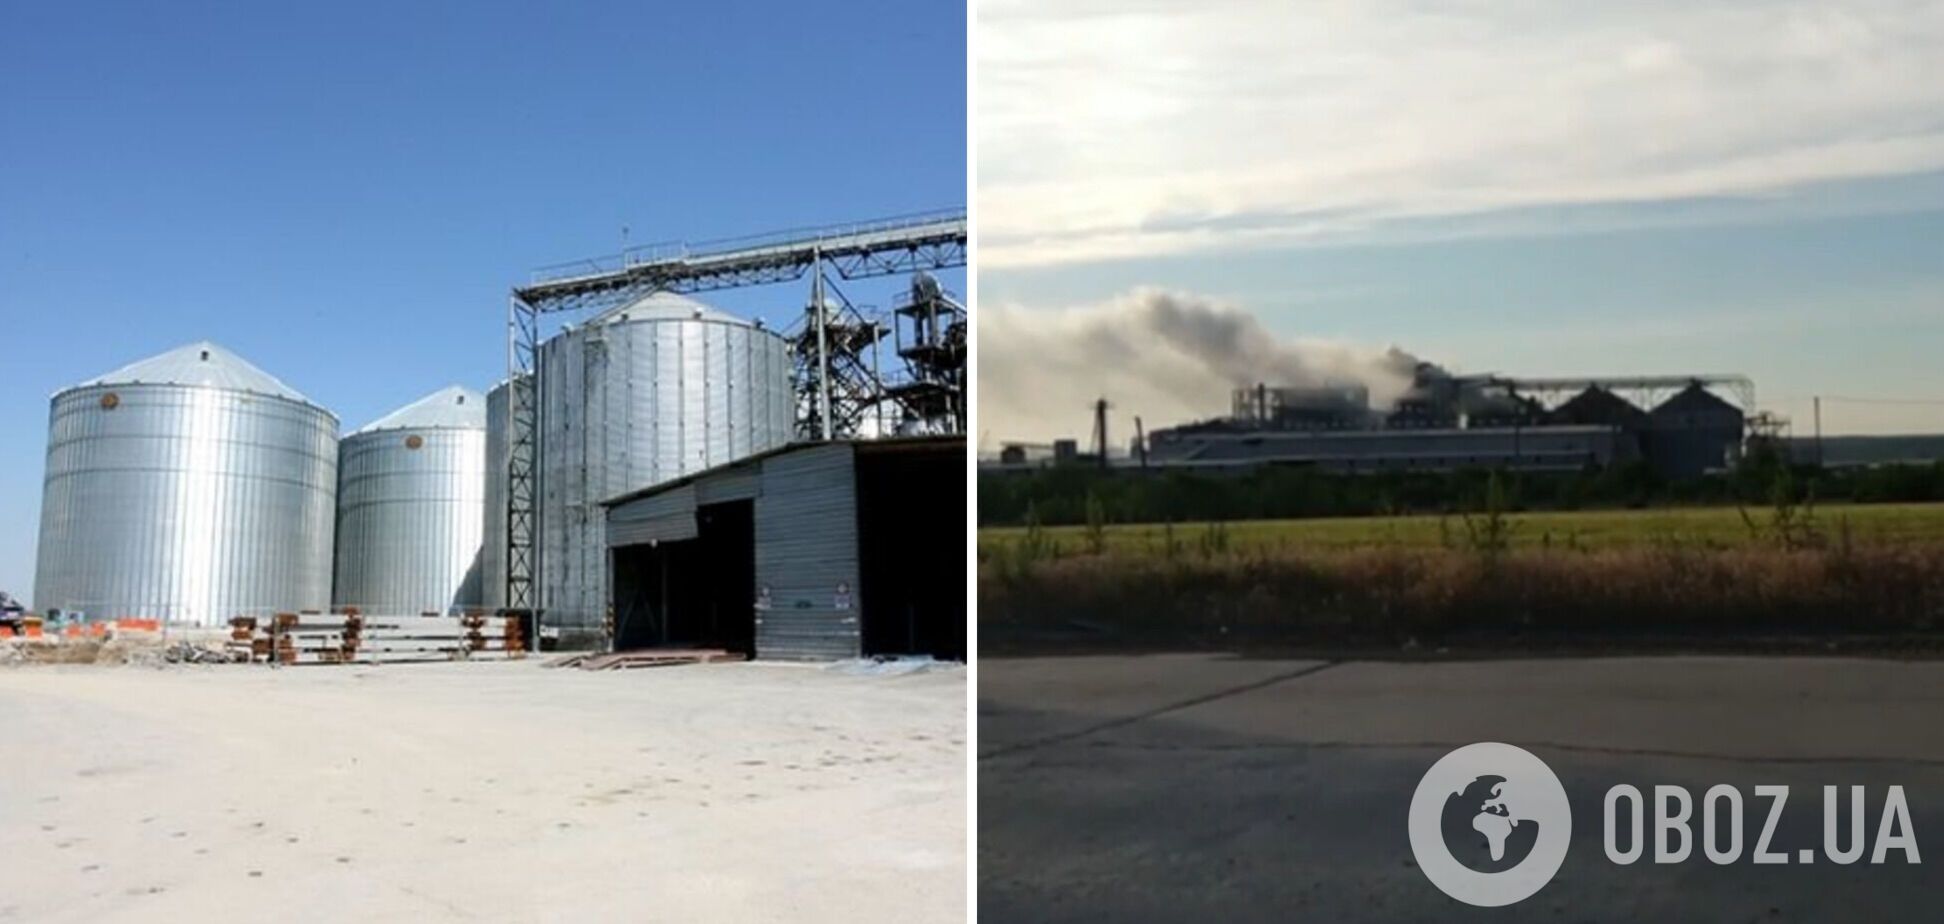 Оккупанты в Мариуполе устроили пожар на заводе: уничтожены тонны семян подсолнуха и масло. Видео